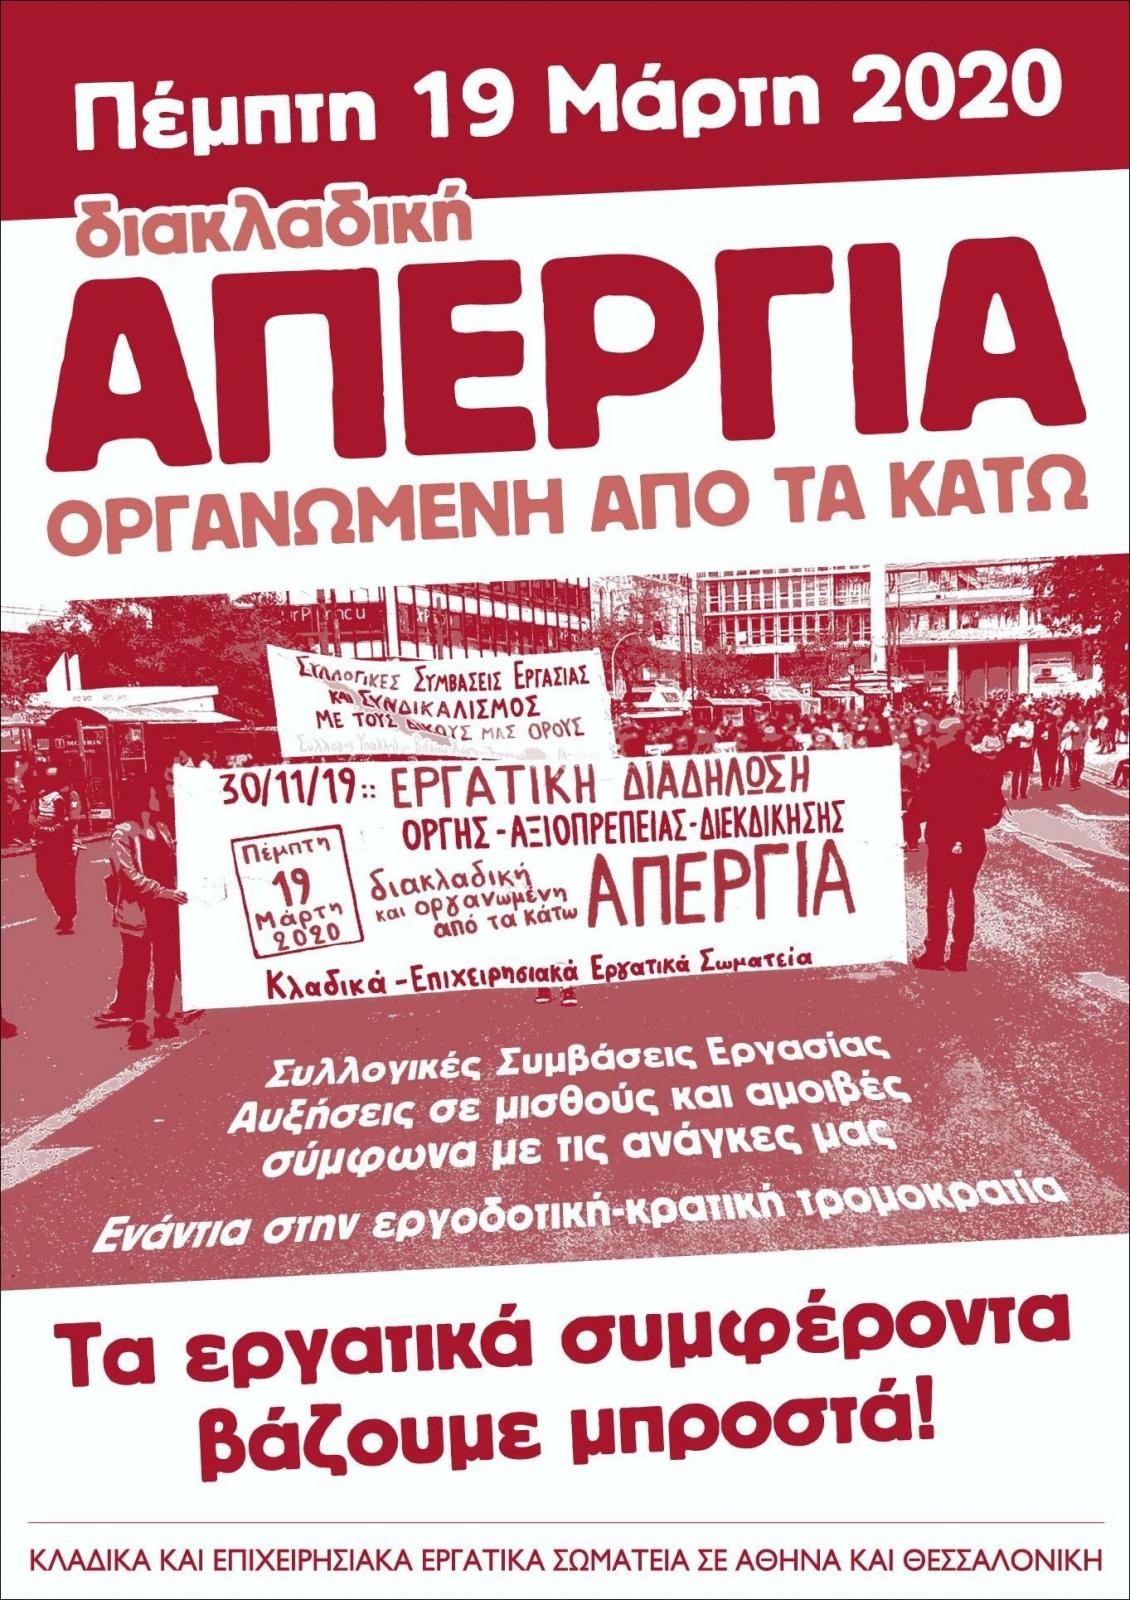 Αθήνα: Ανοιχτή σύσκεψη σωματείων – Δευτέρα 10 Φλεβάρη 2020 19:00